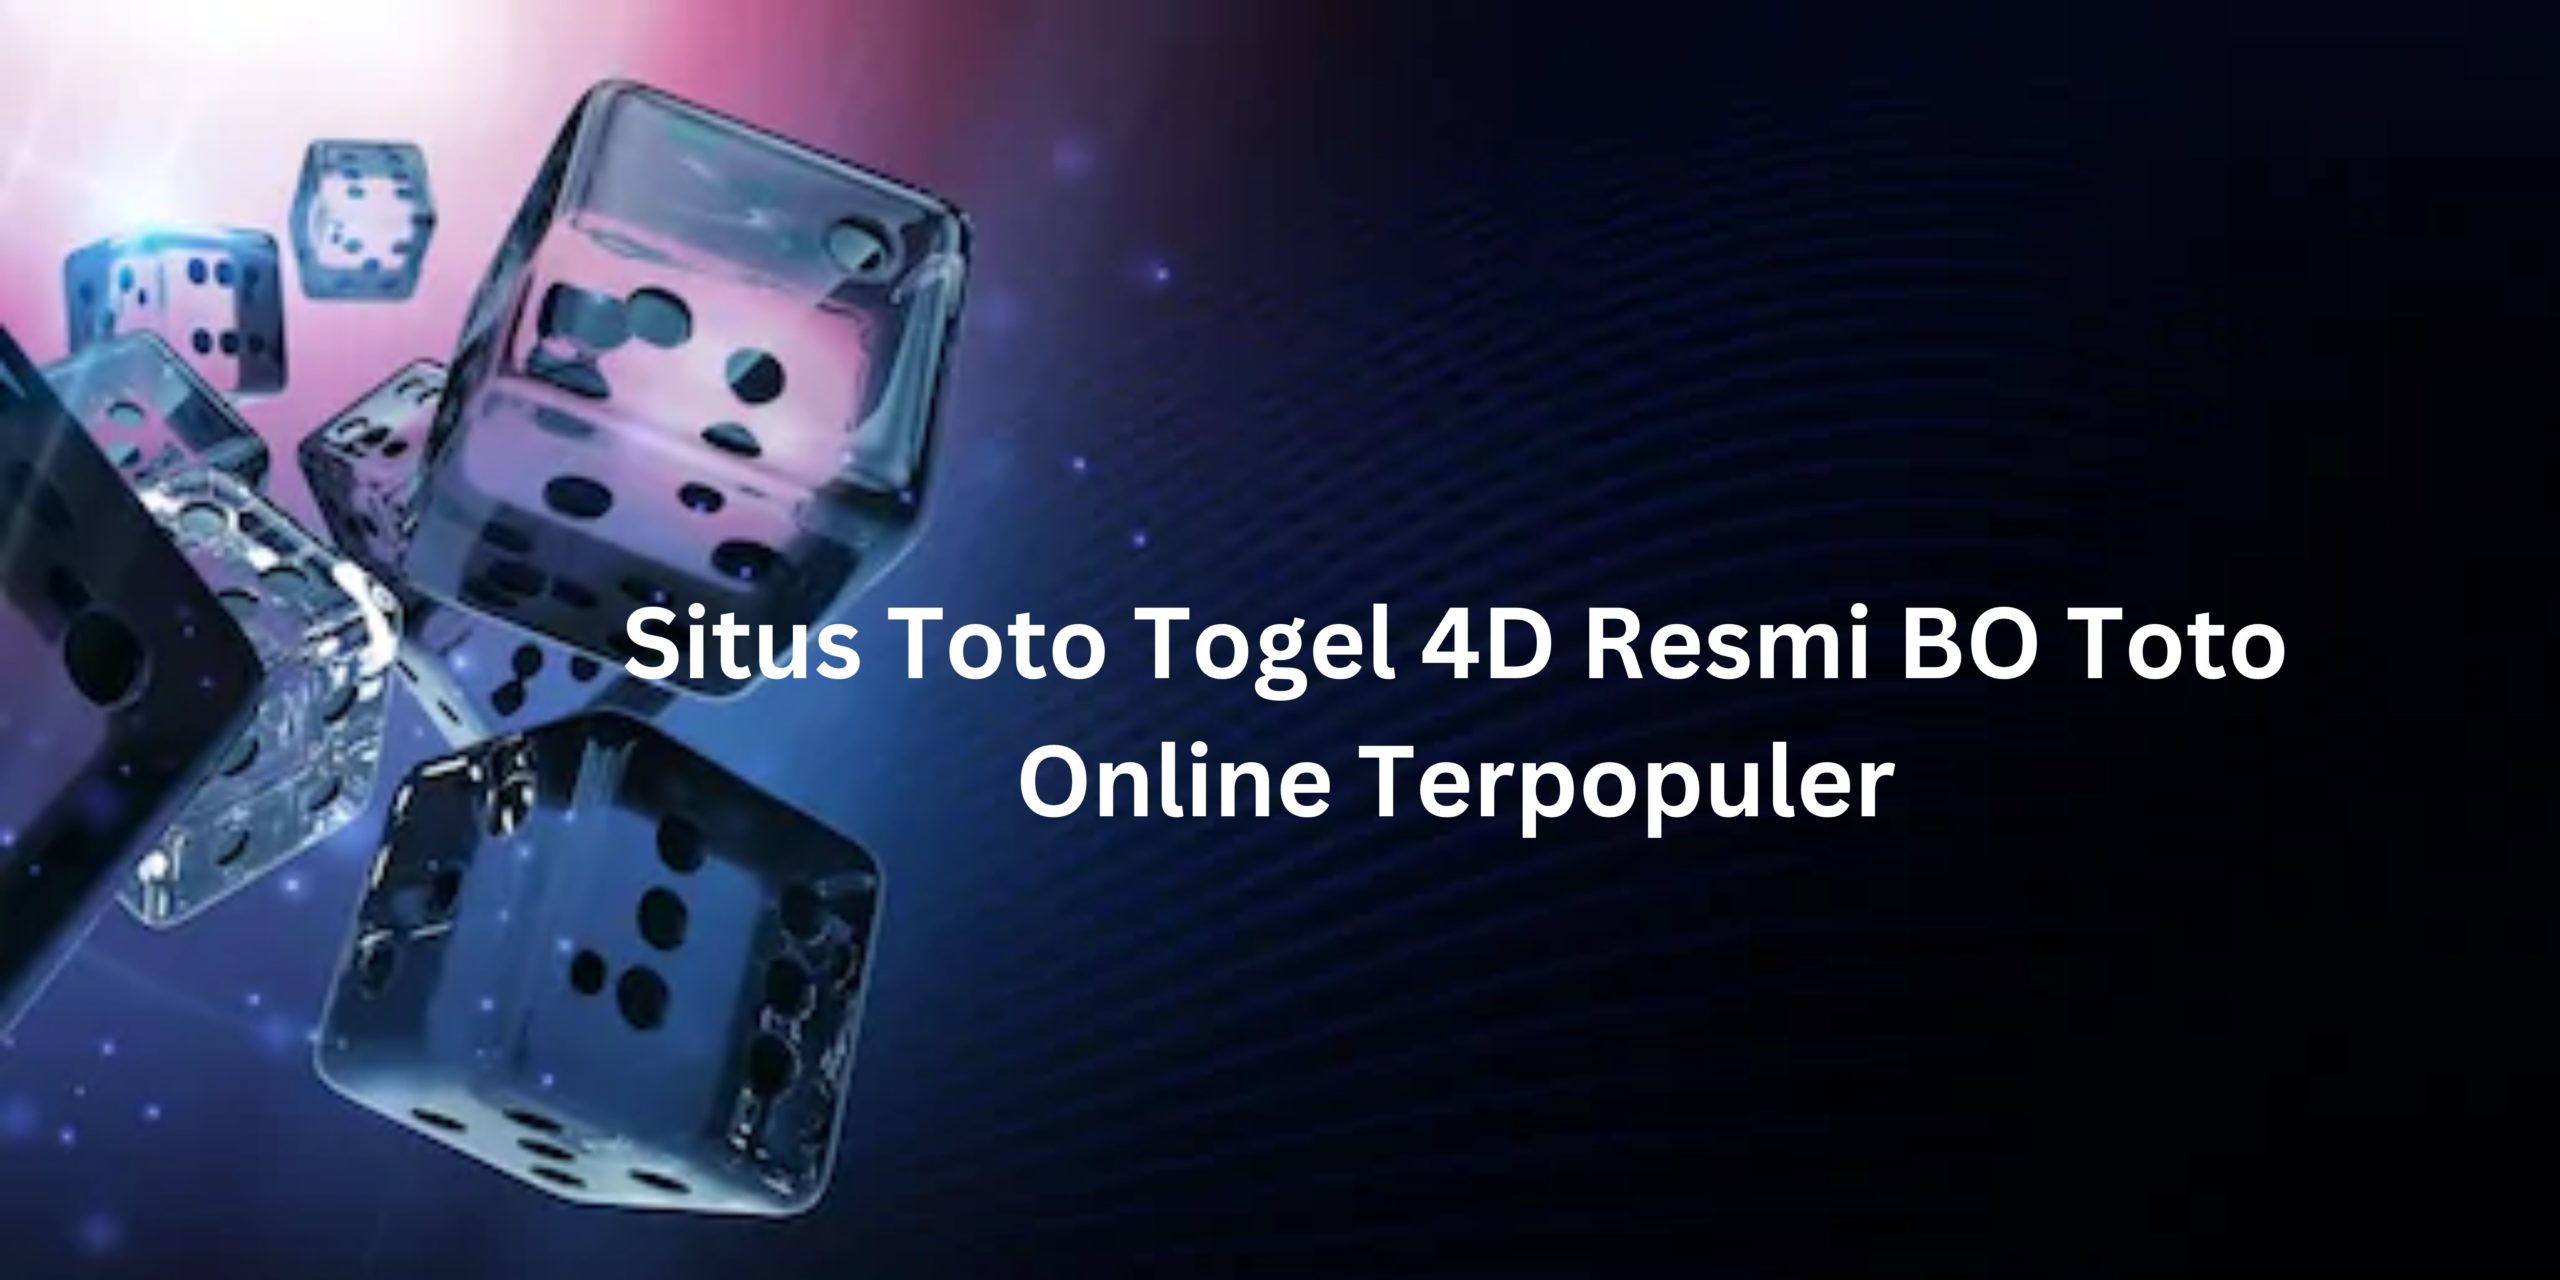 Situs Toto Togel 4D Resmi BO Toto Online Terpopuler